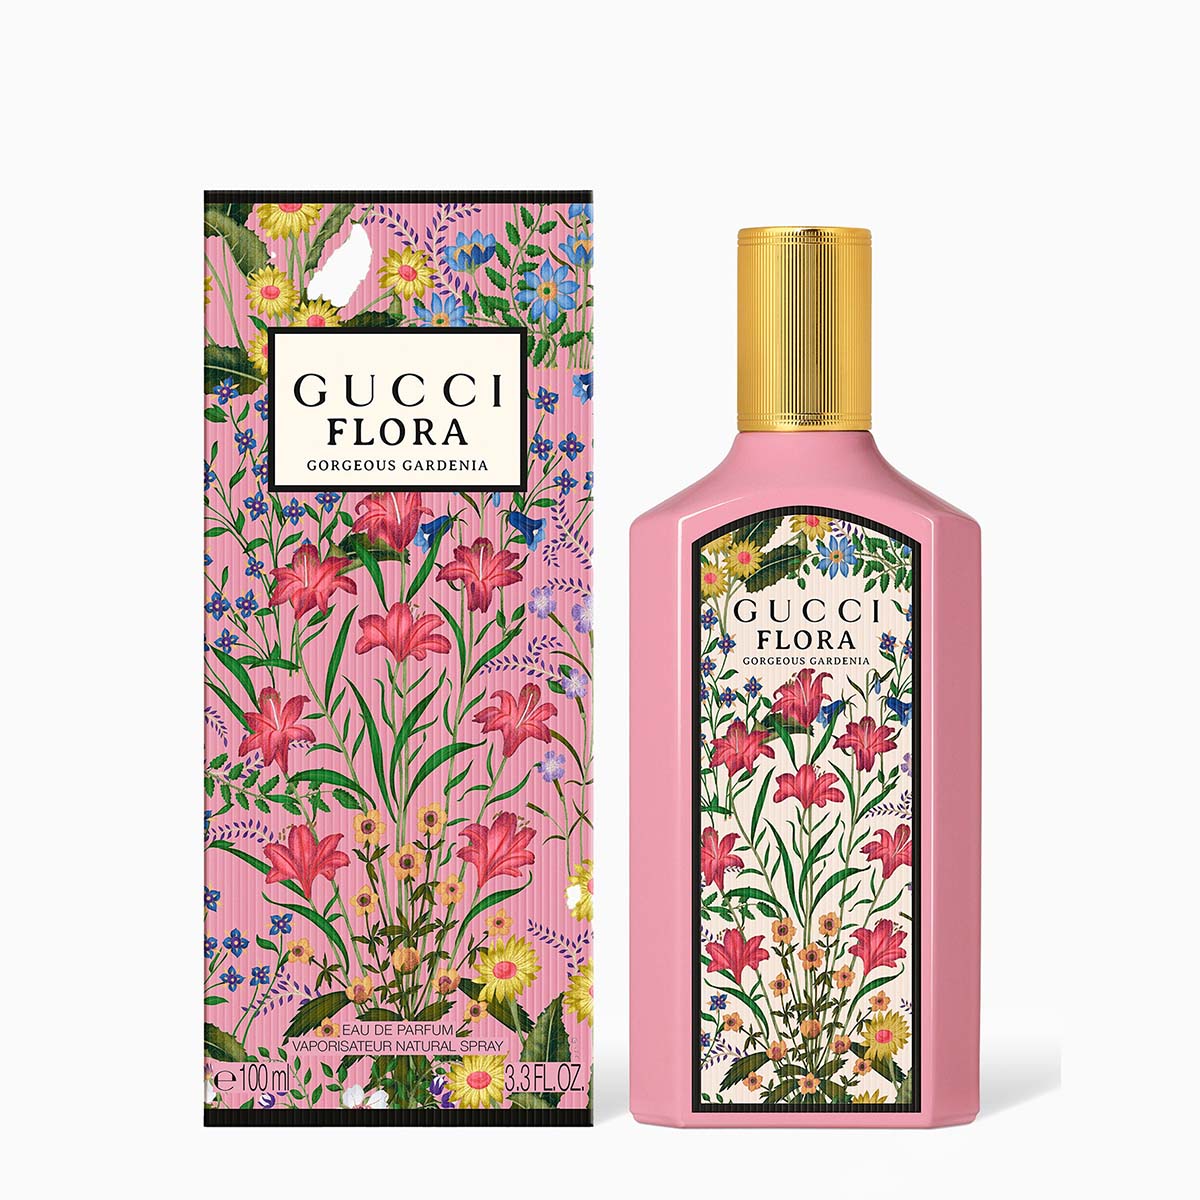 Gucci Flora Gorgeous Gardenia EDP | My Perfume Shop Australia